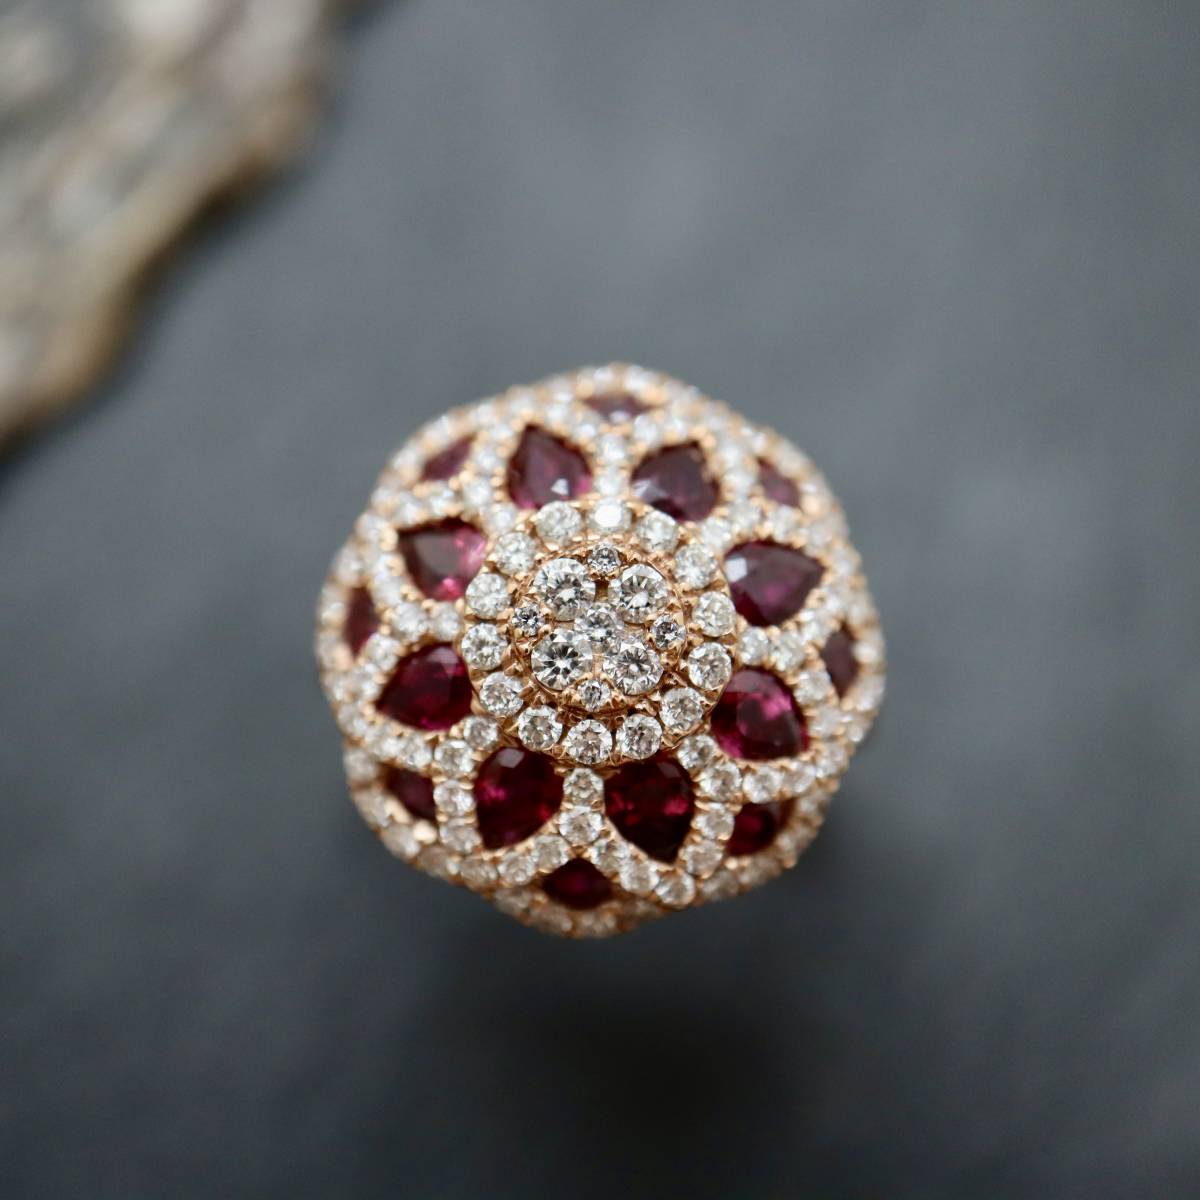 Bague rubis et diamants motif mandala, sur de l'or rose 750 millièmes.